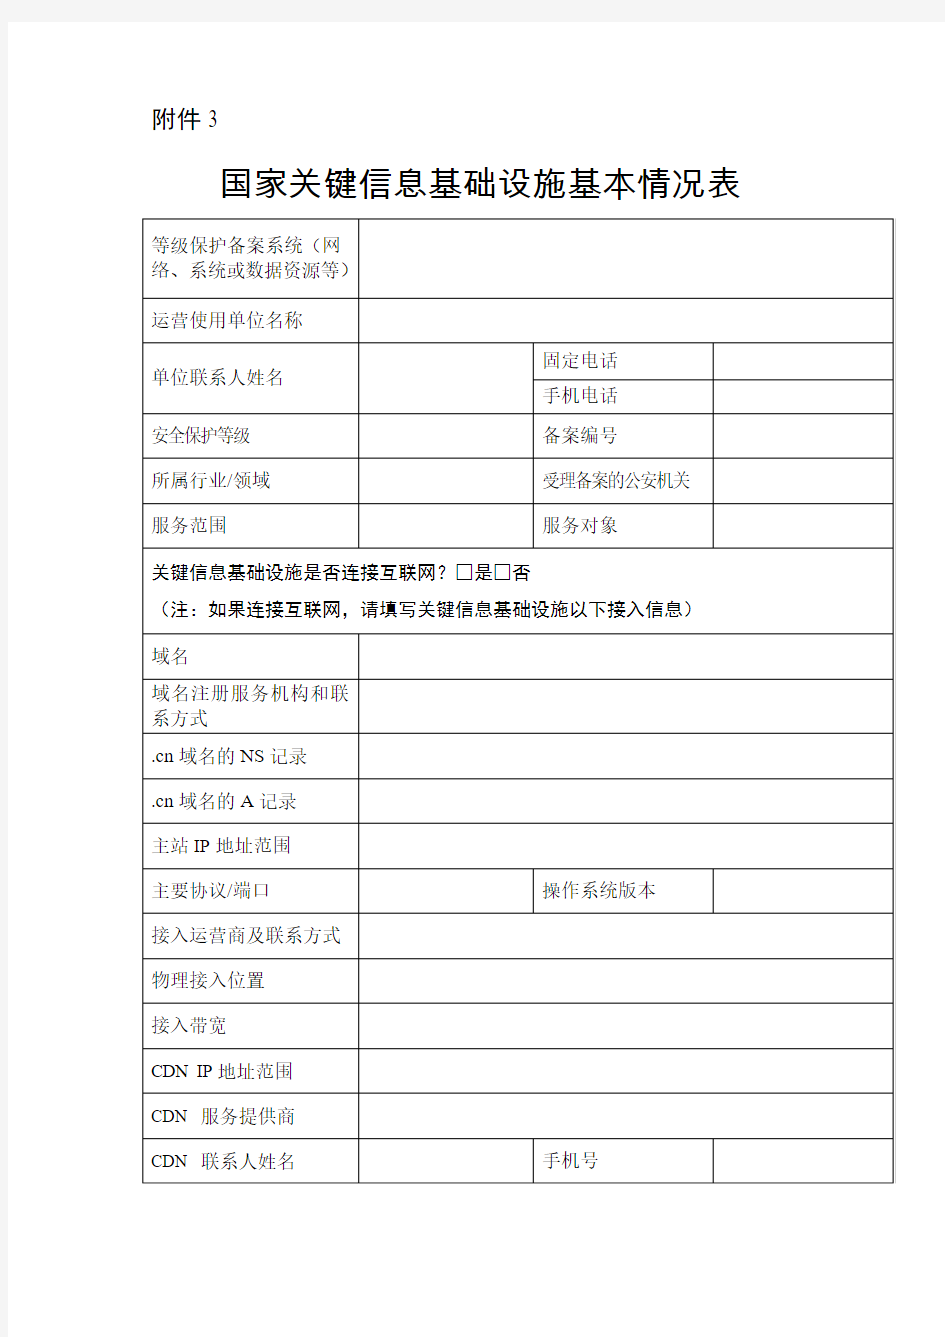 表格附件(关于印发2017年广东省公安机关网络安全执法检查工作方案的通知)